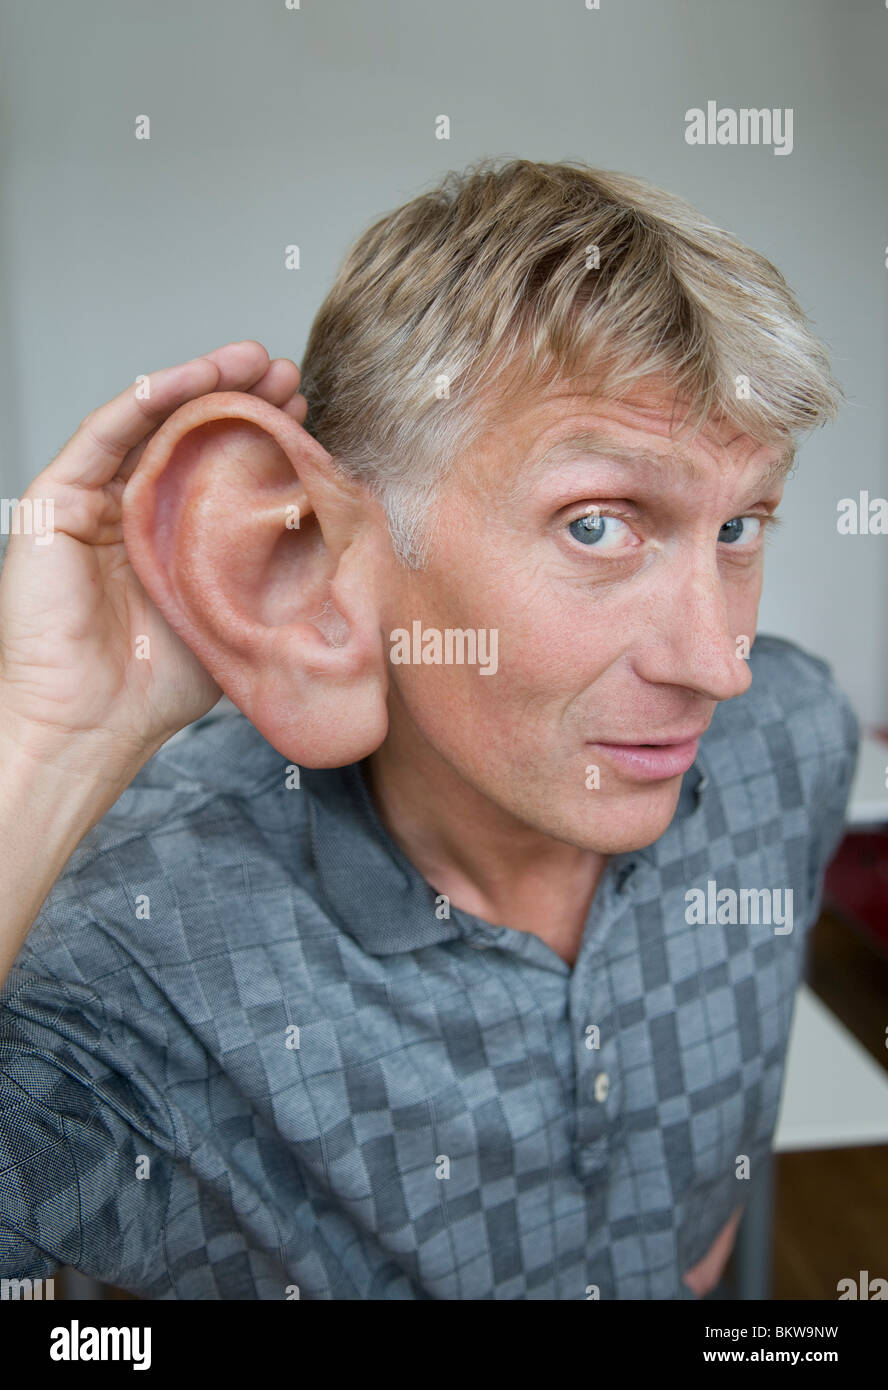 L'homme avec de grandes oreilles Photo Stock - Alamy